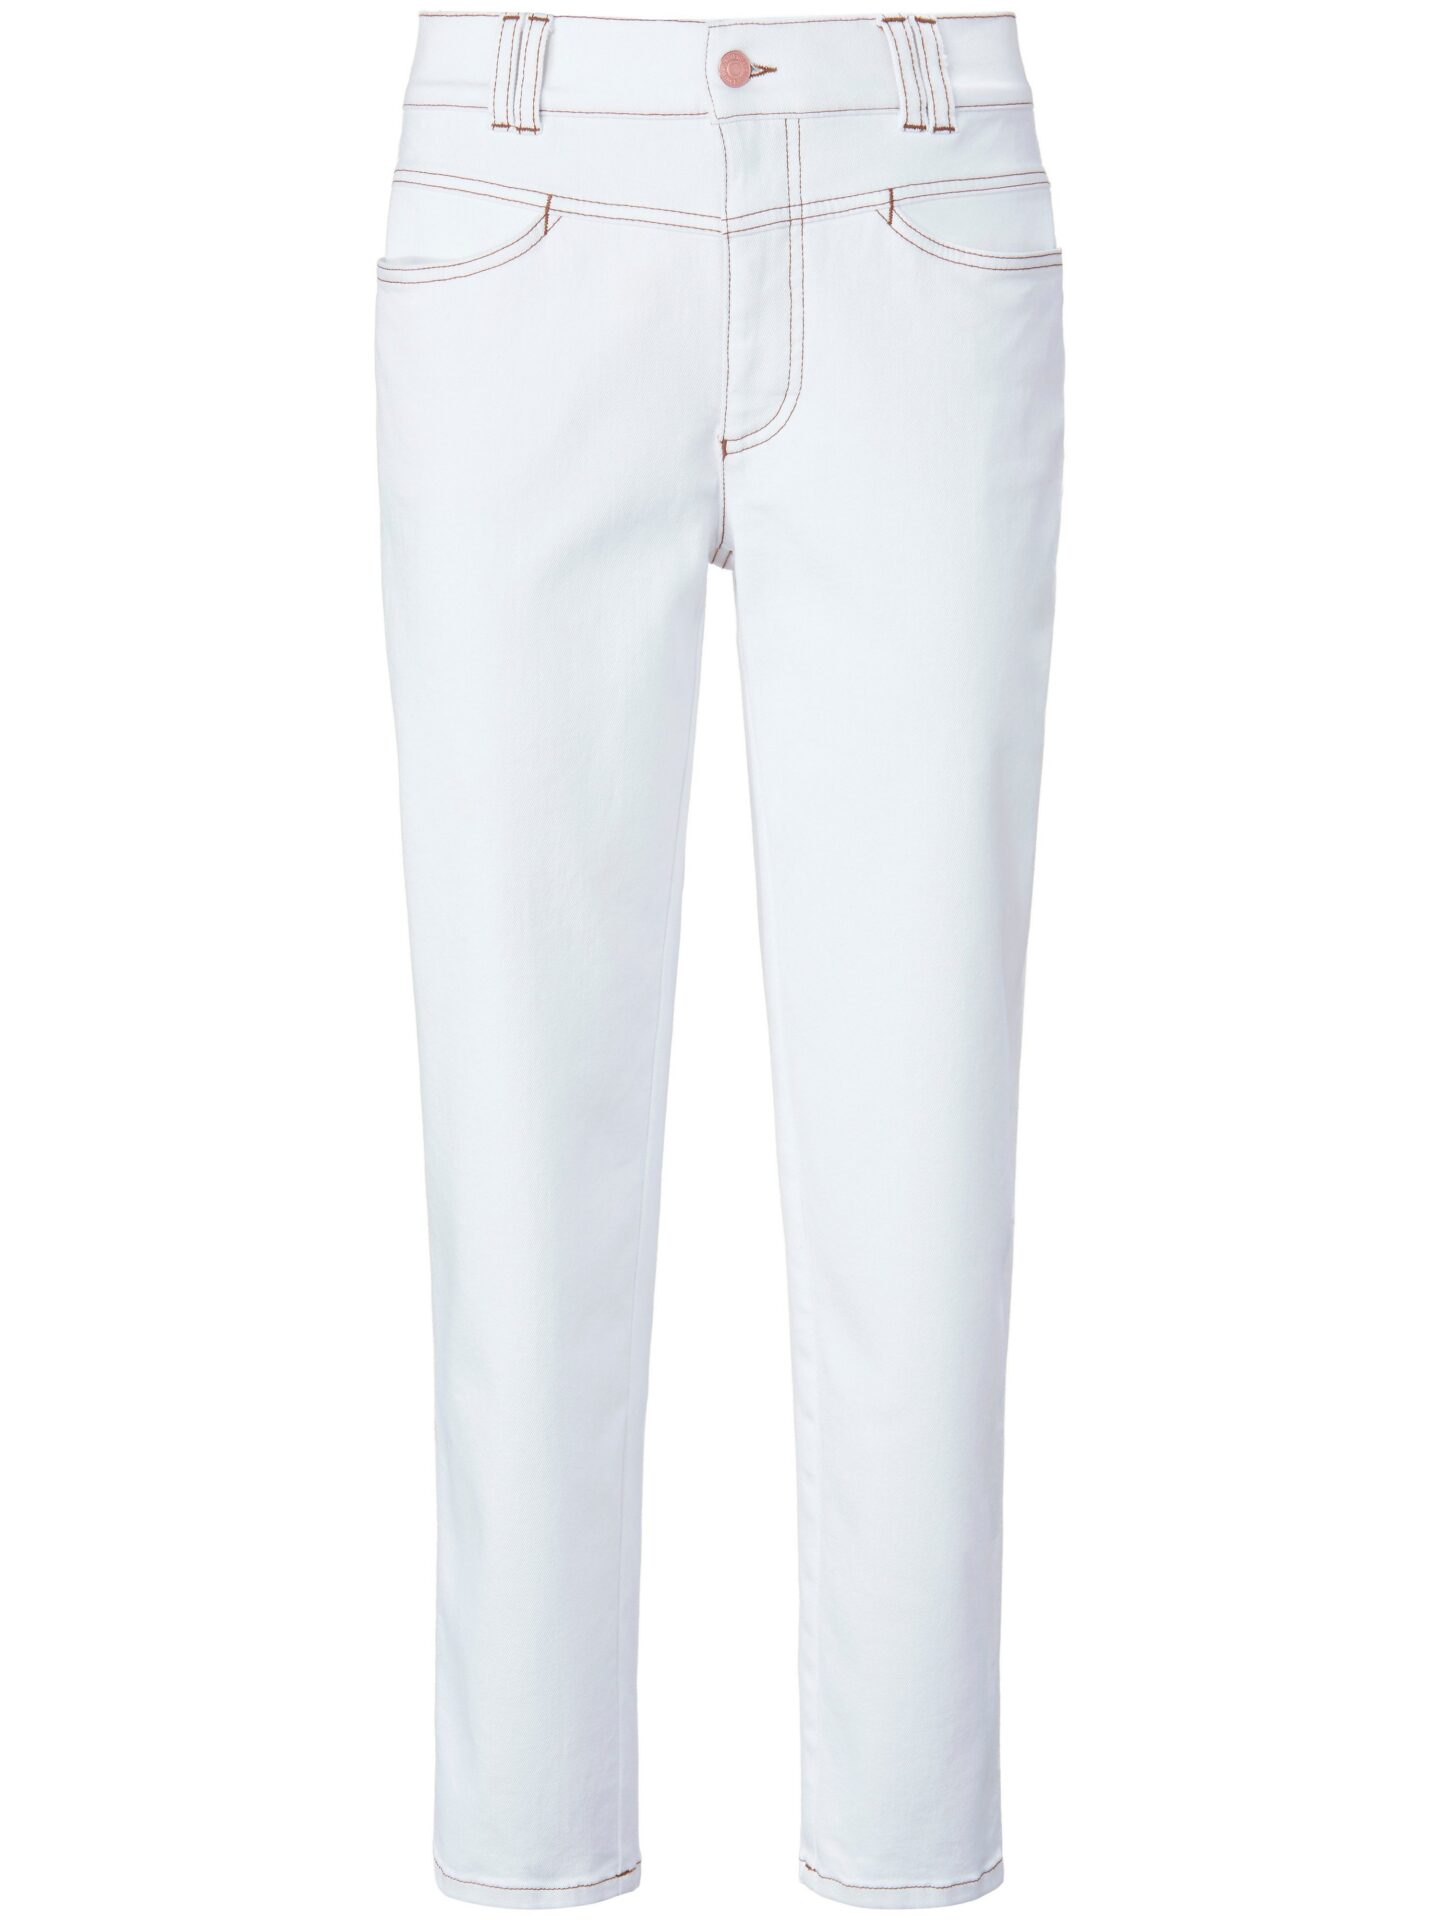 Enkellange slim fit-jeans Van DAY.LIKE wit